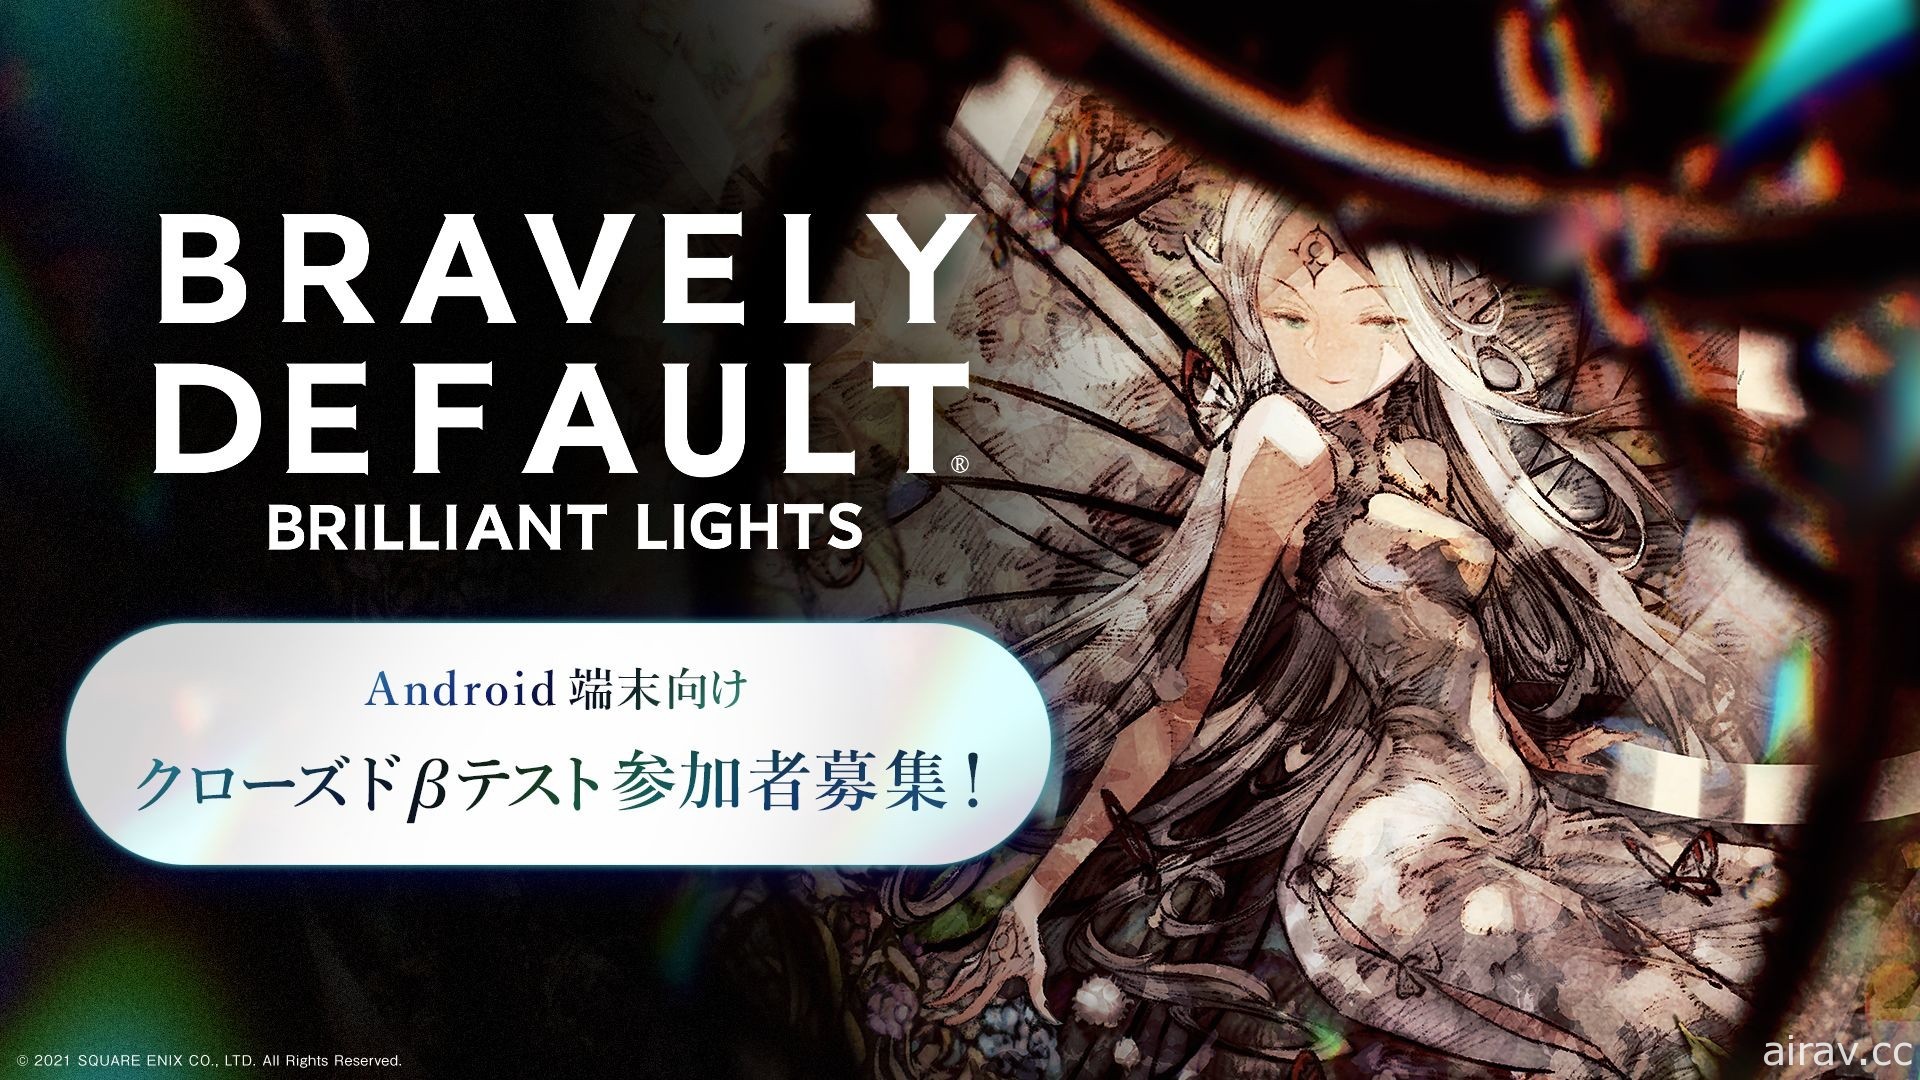 《BRAVELY DEFAULT BRILLIANT LIGHTS》即日起于日本招募 CBT 测试玩家